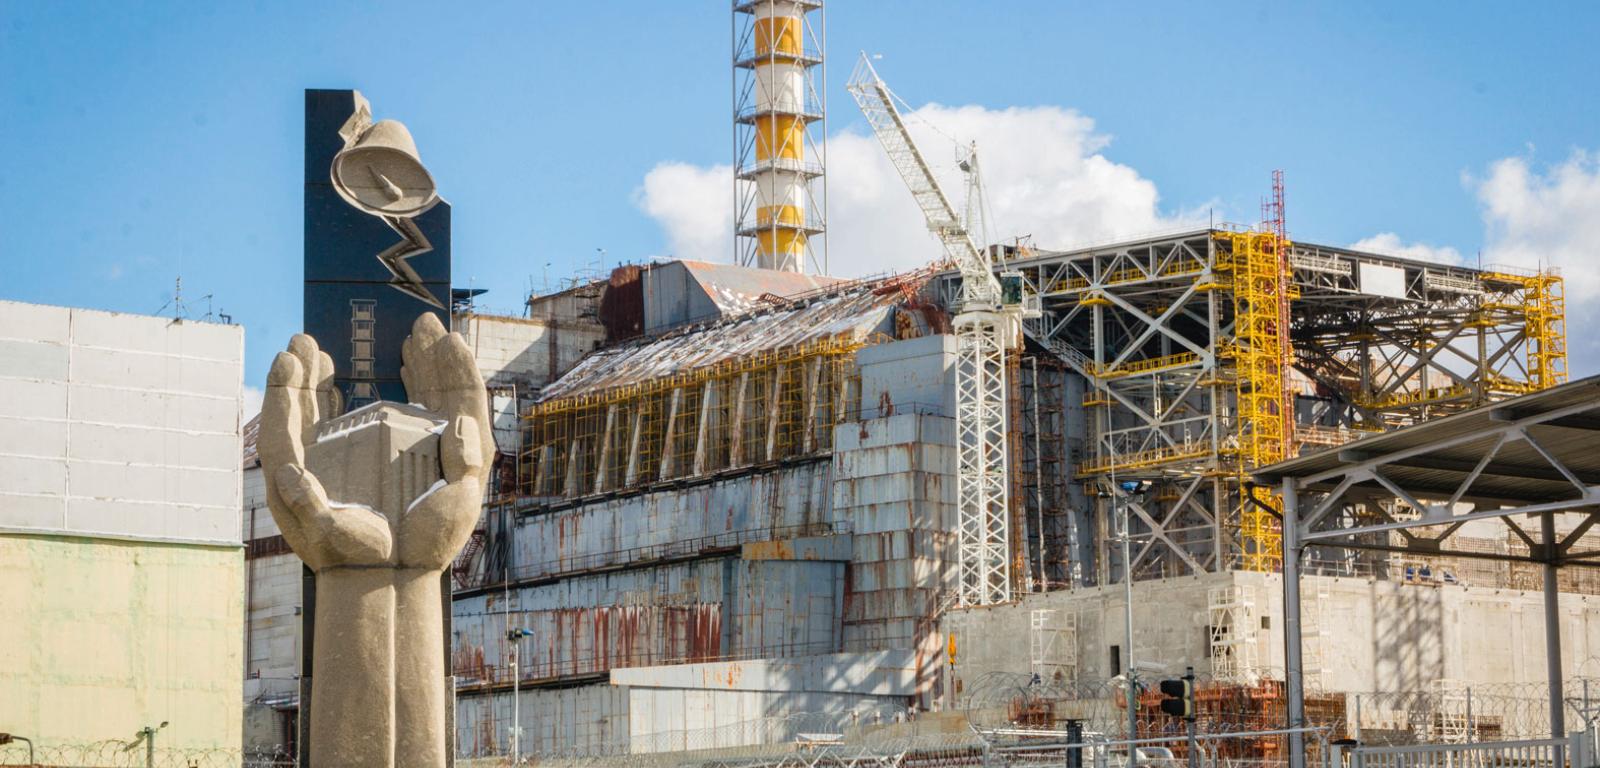 Reaktor numer 4 czarnobylskiej elektrowni jądrowej, którego eksplozja ­spowodowała wykluczenie z użytkowania ok. 4700 km2 terytorium Ukrainy i Białorusi.